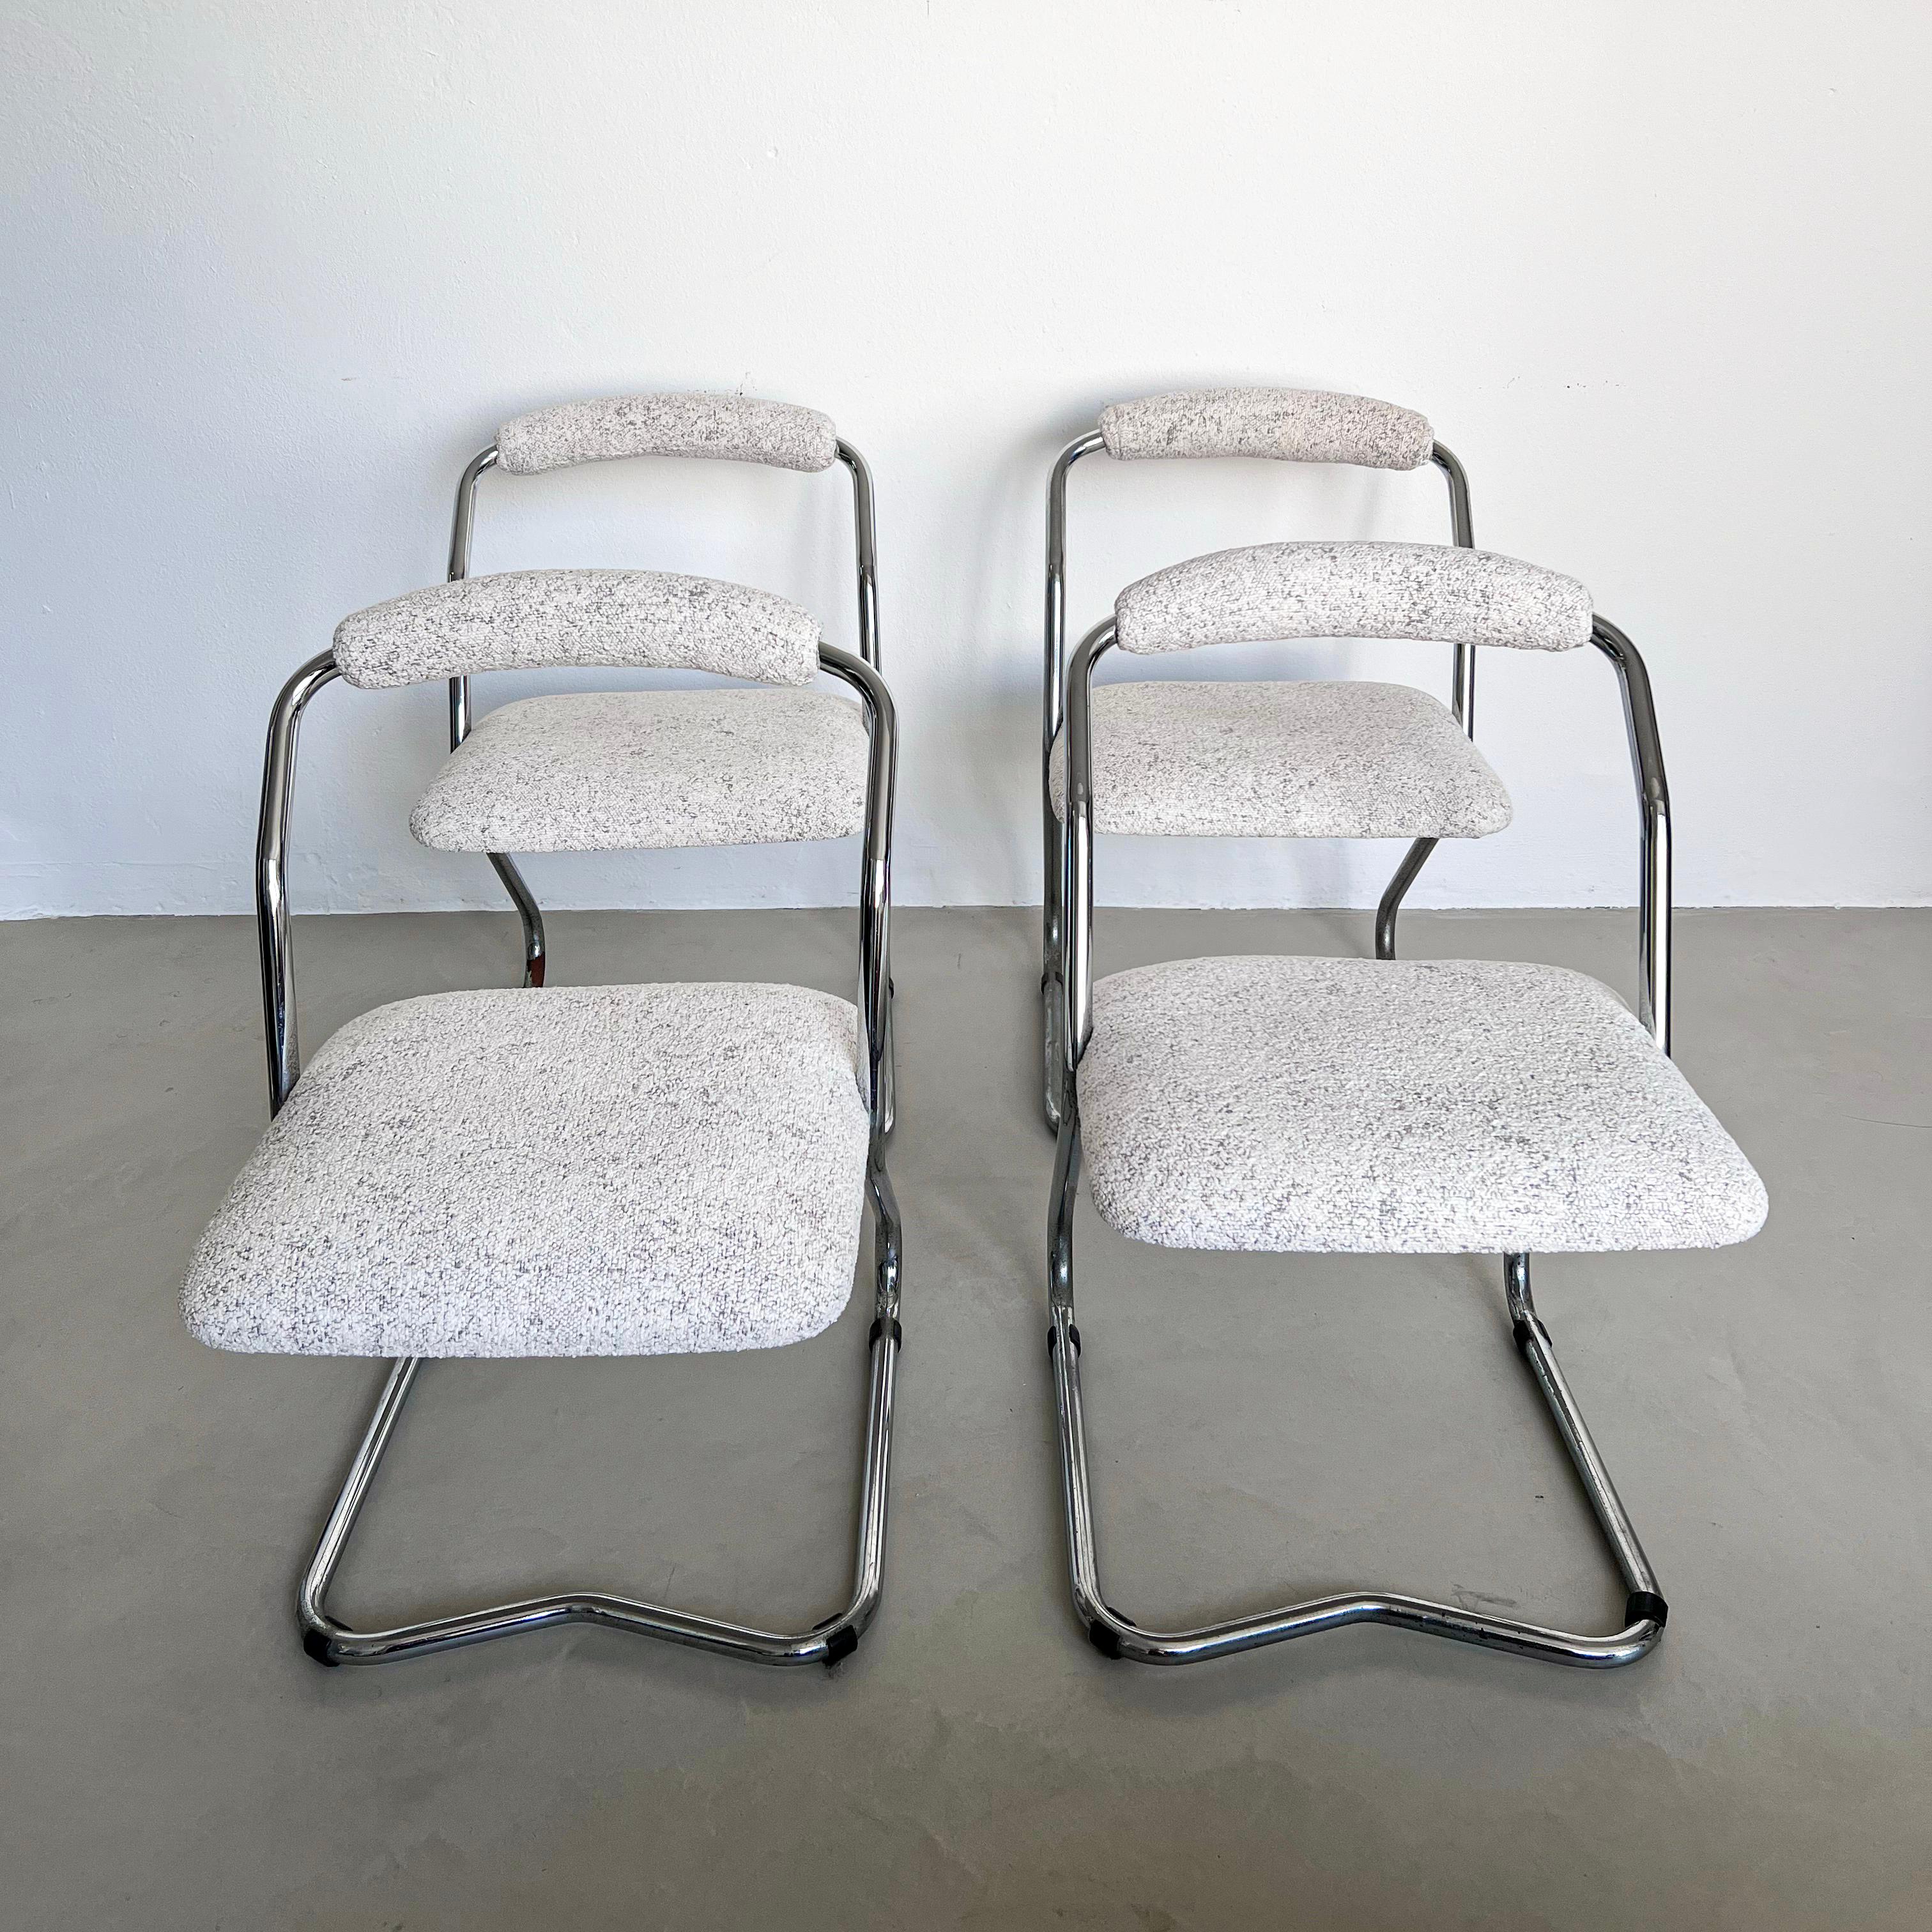 Dekorative Esszimmerstühle - Weiße Bouclé-Stühle - Verchromte Freischwinger-Stühle

Satz von vier Mid-Century Modern / Space Age Esszimmerstühlen, mit dekorativem, durchgehendem Rohrgestell aus verchromtem Metall, gepolstertem Sitz und gepolsterter